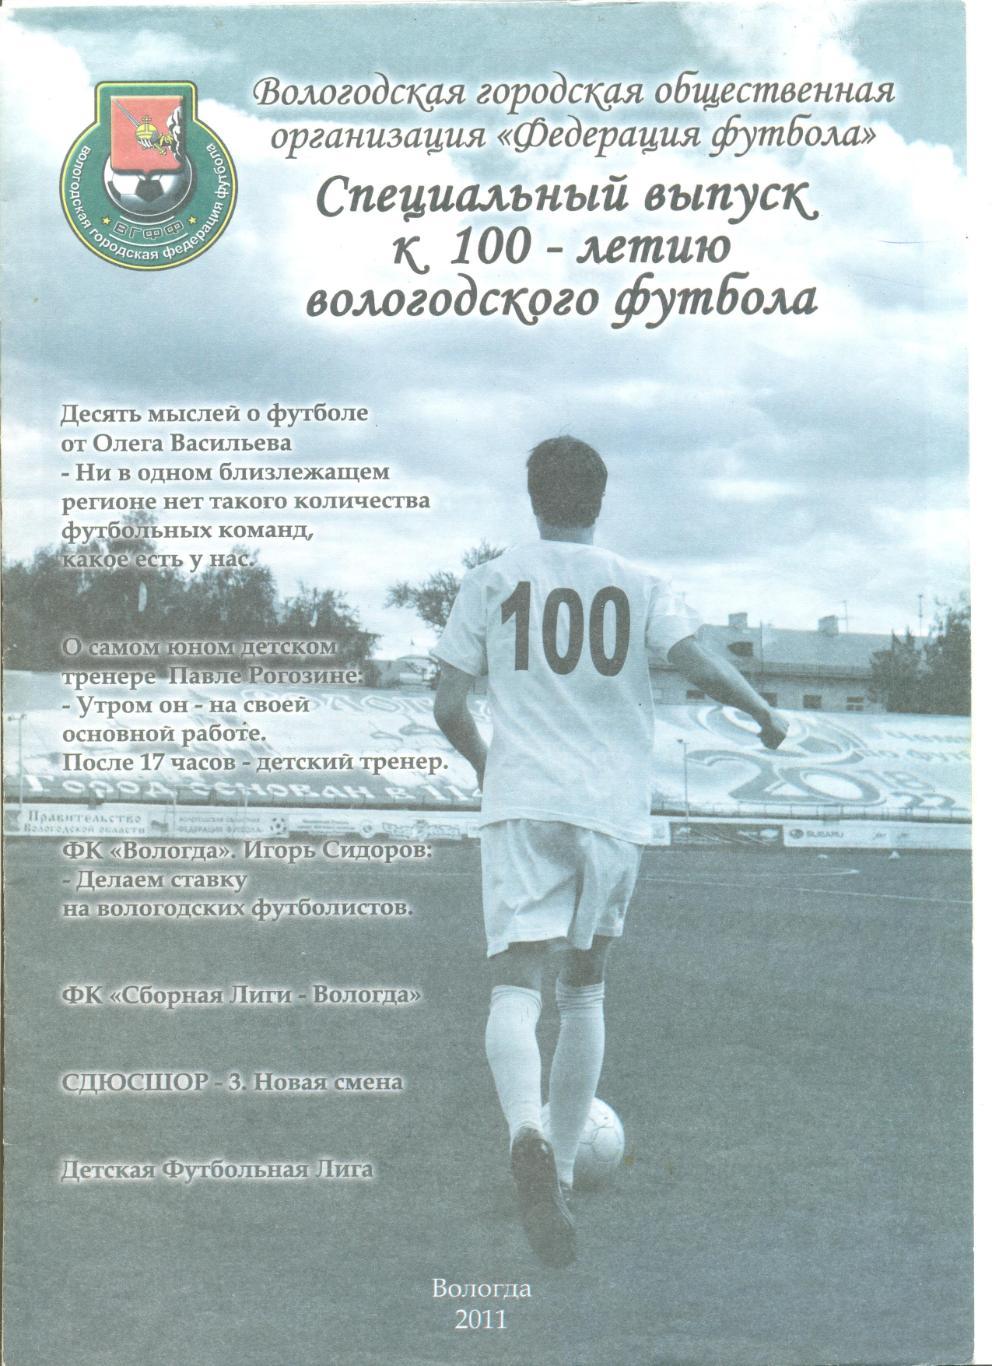 Специальное издание к 100-летию вологодского футбола. Август 2011 год.